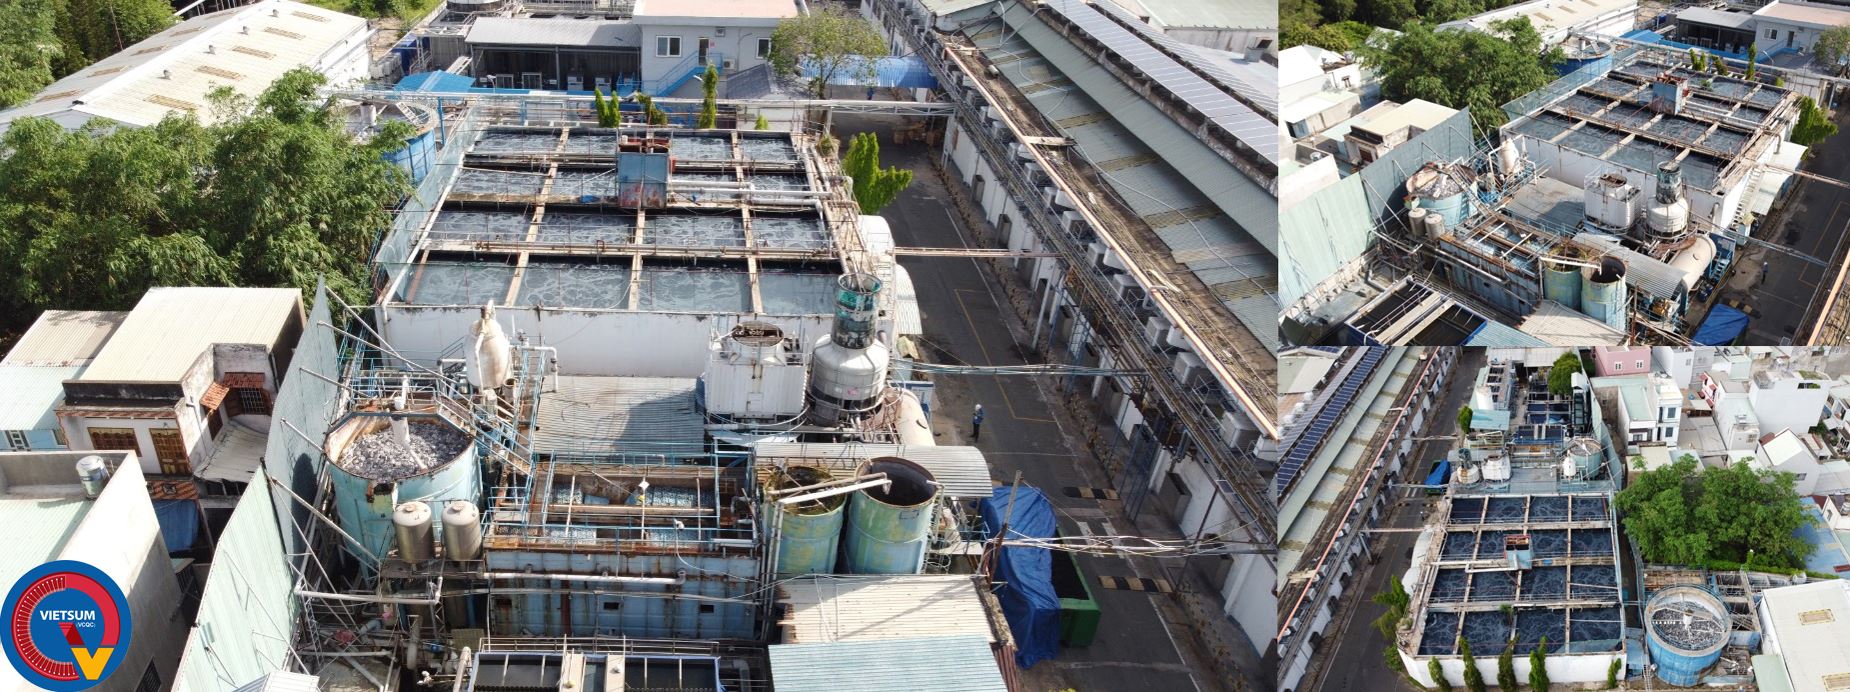 Kiểm định chất lượng công trình xây dựng hệ thống cụm bể xử lý nước thải nhà máy 2022.